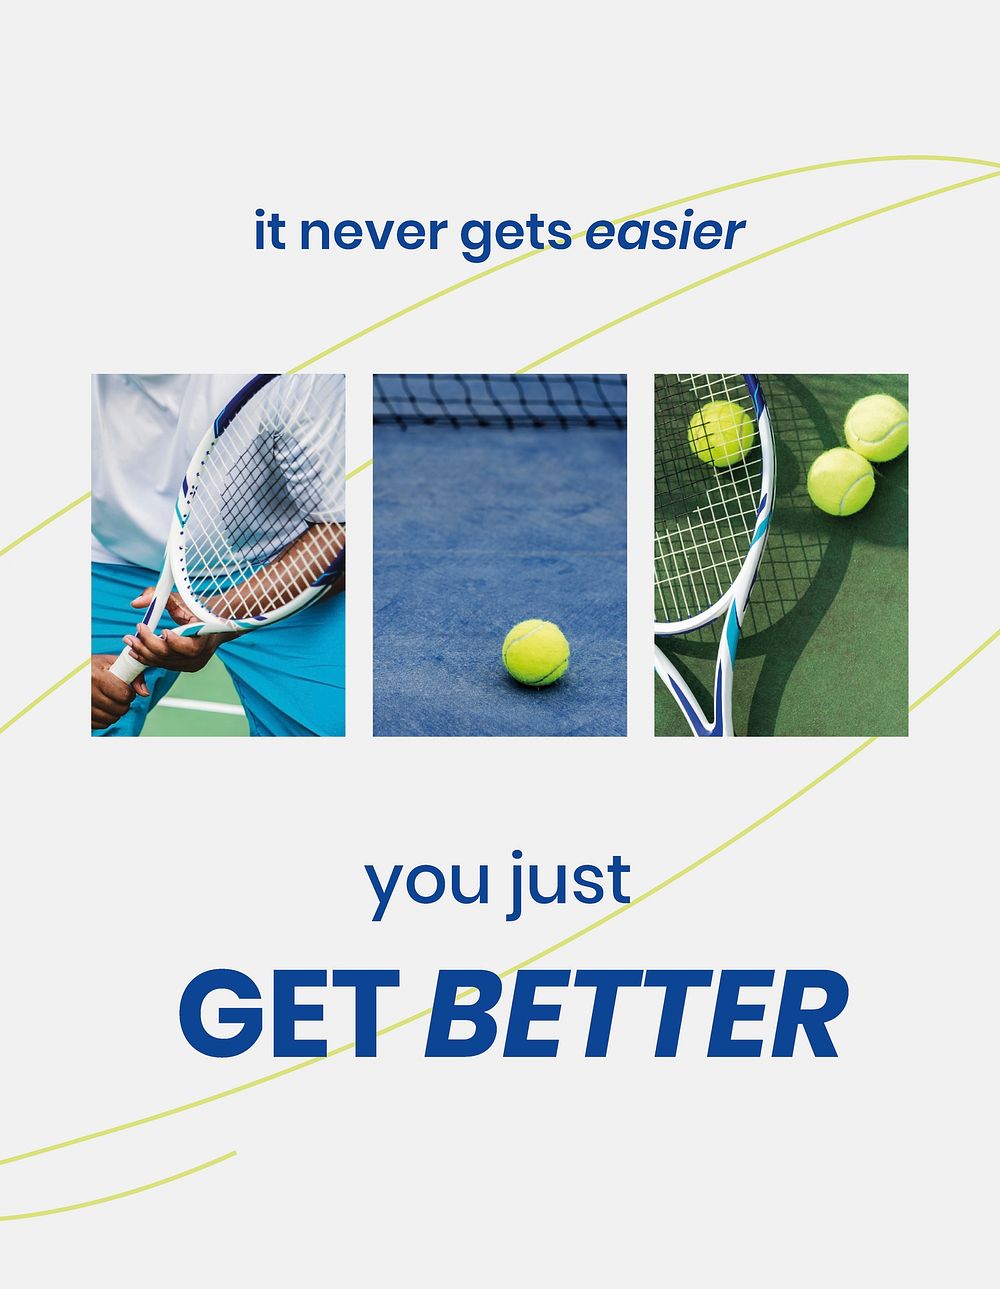 Motivational sports flyer template, tennis photo psd